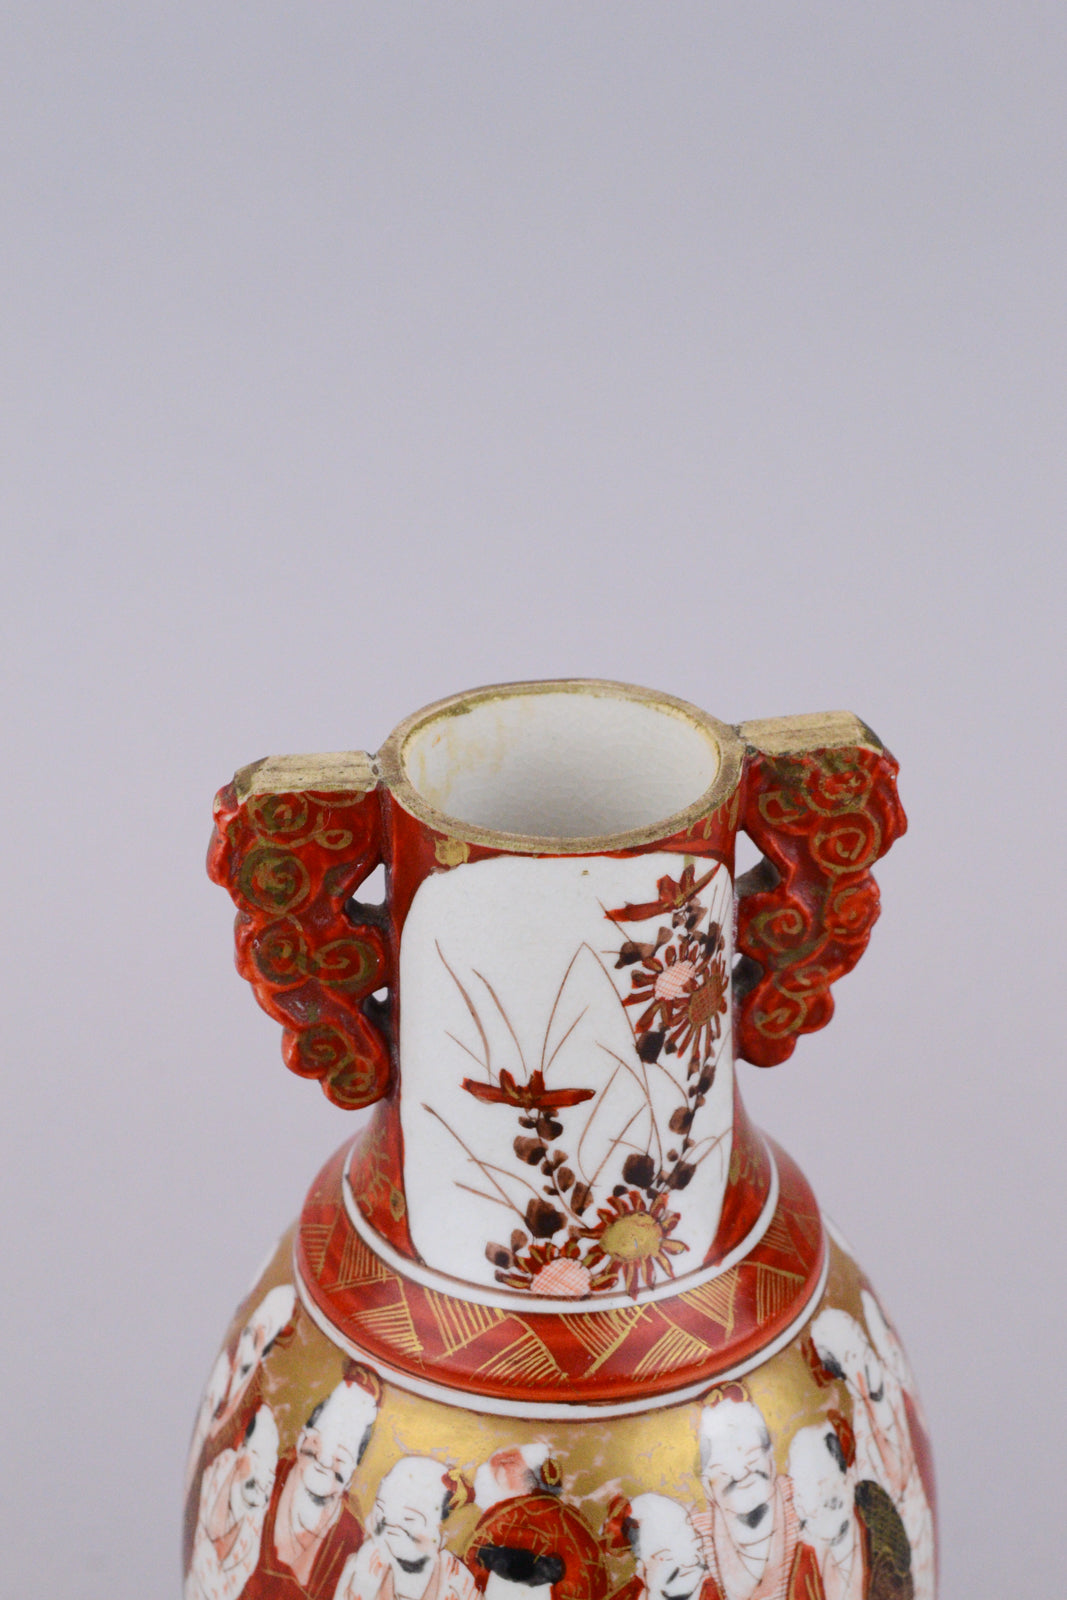 Small Arita Kutani Vase